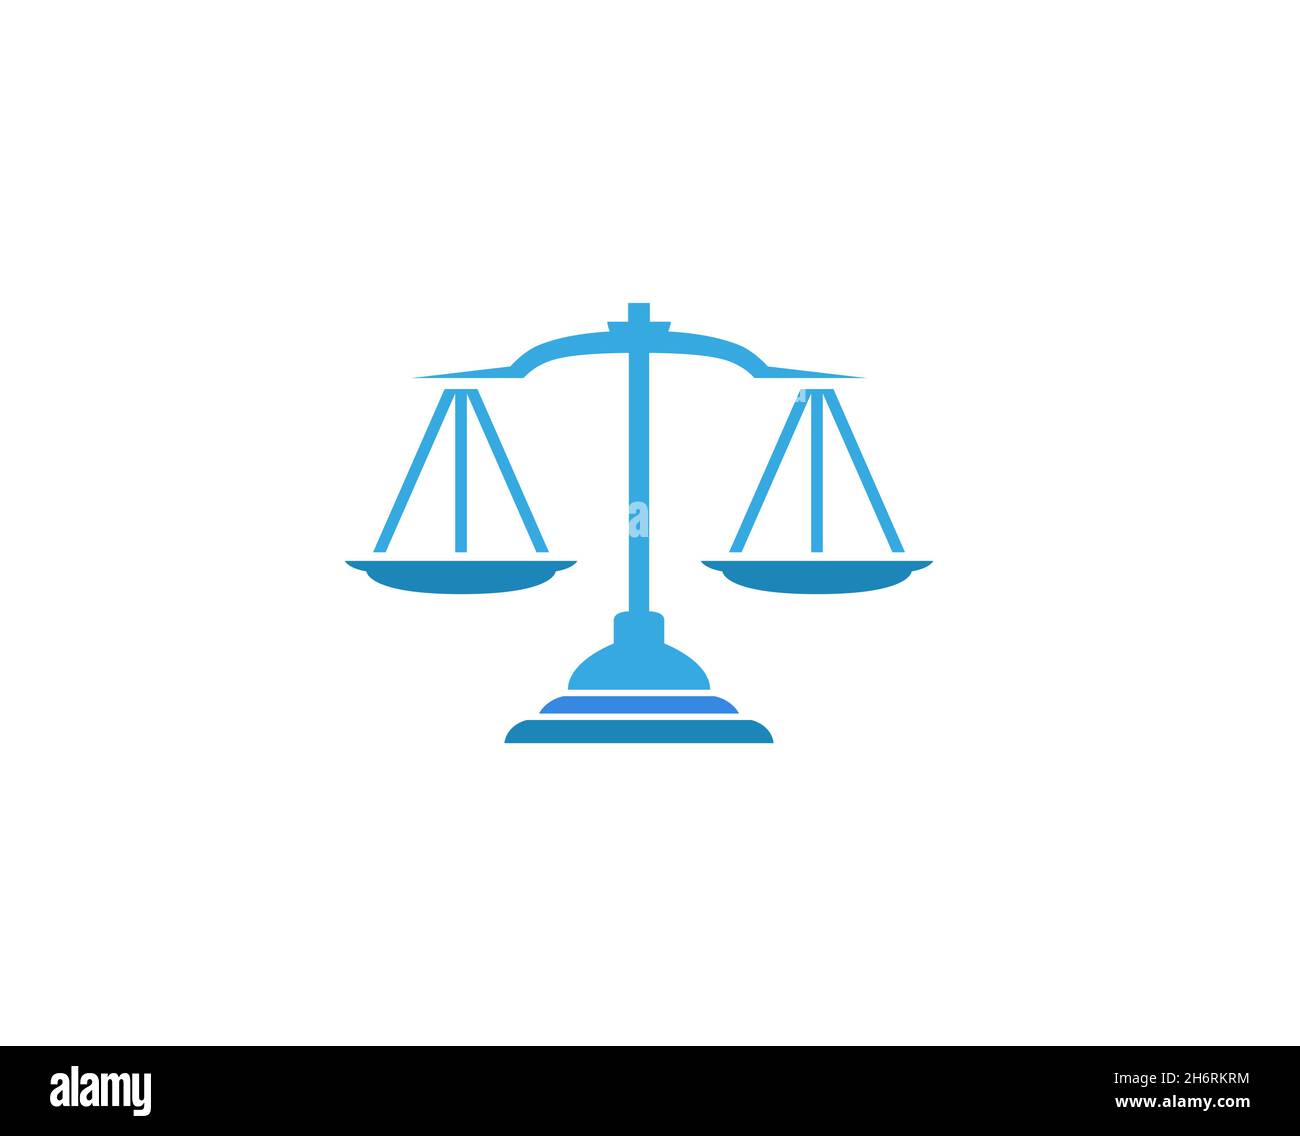 Kreative Abstrakte Blaue Skalen Gerechtigkeit Gesetz Logo Design Vektor Symbol Illustration Stock Vektor